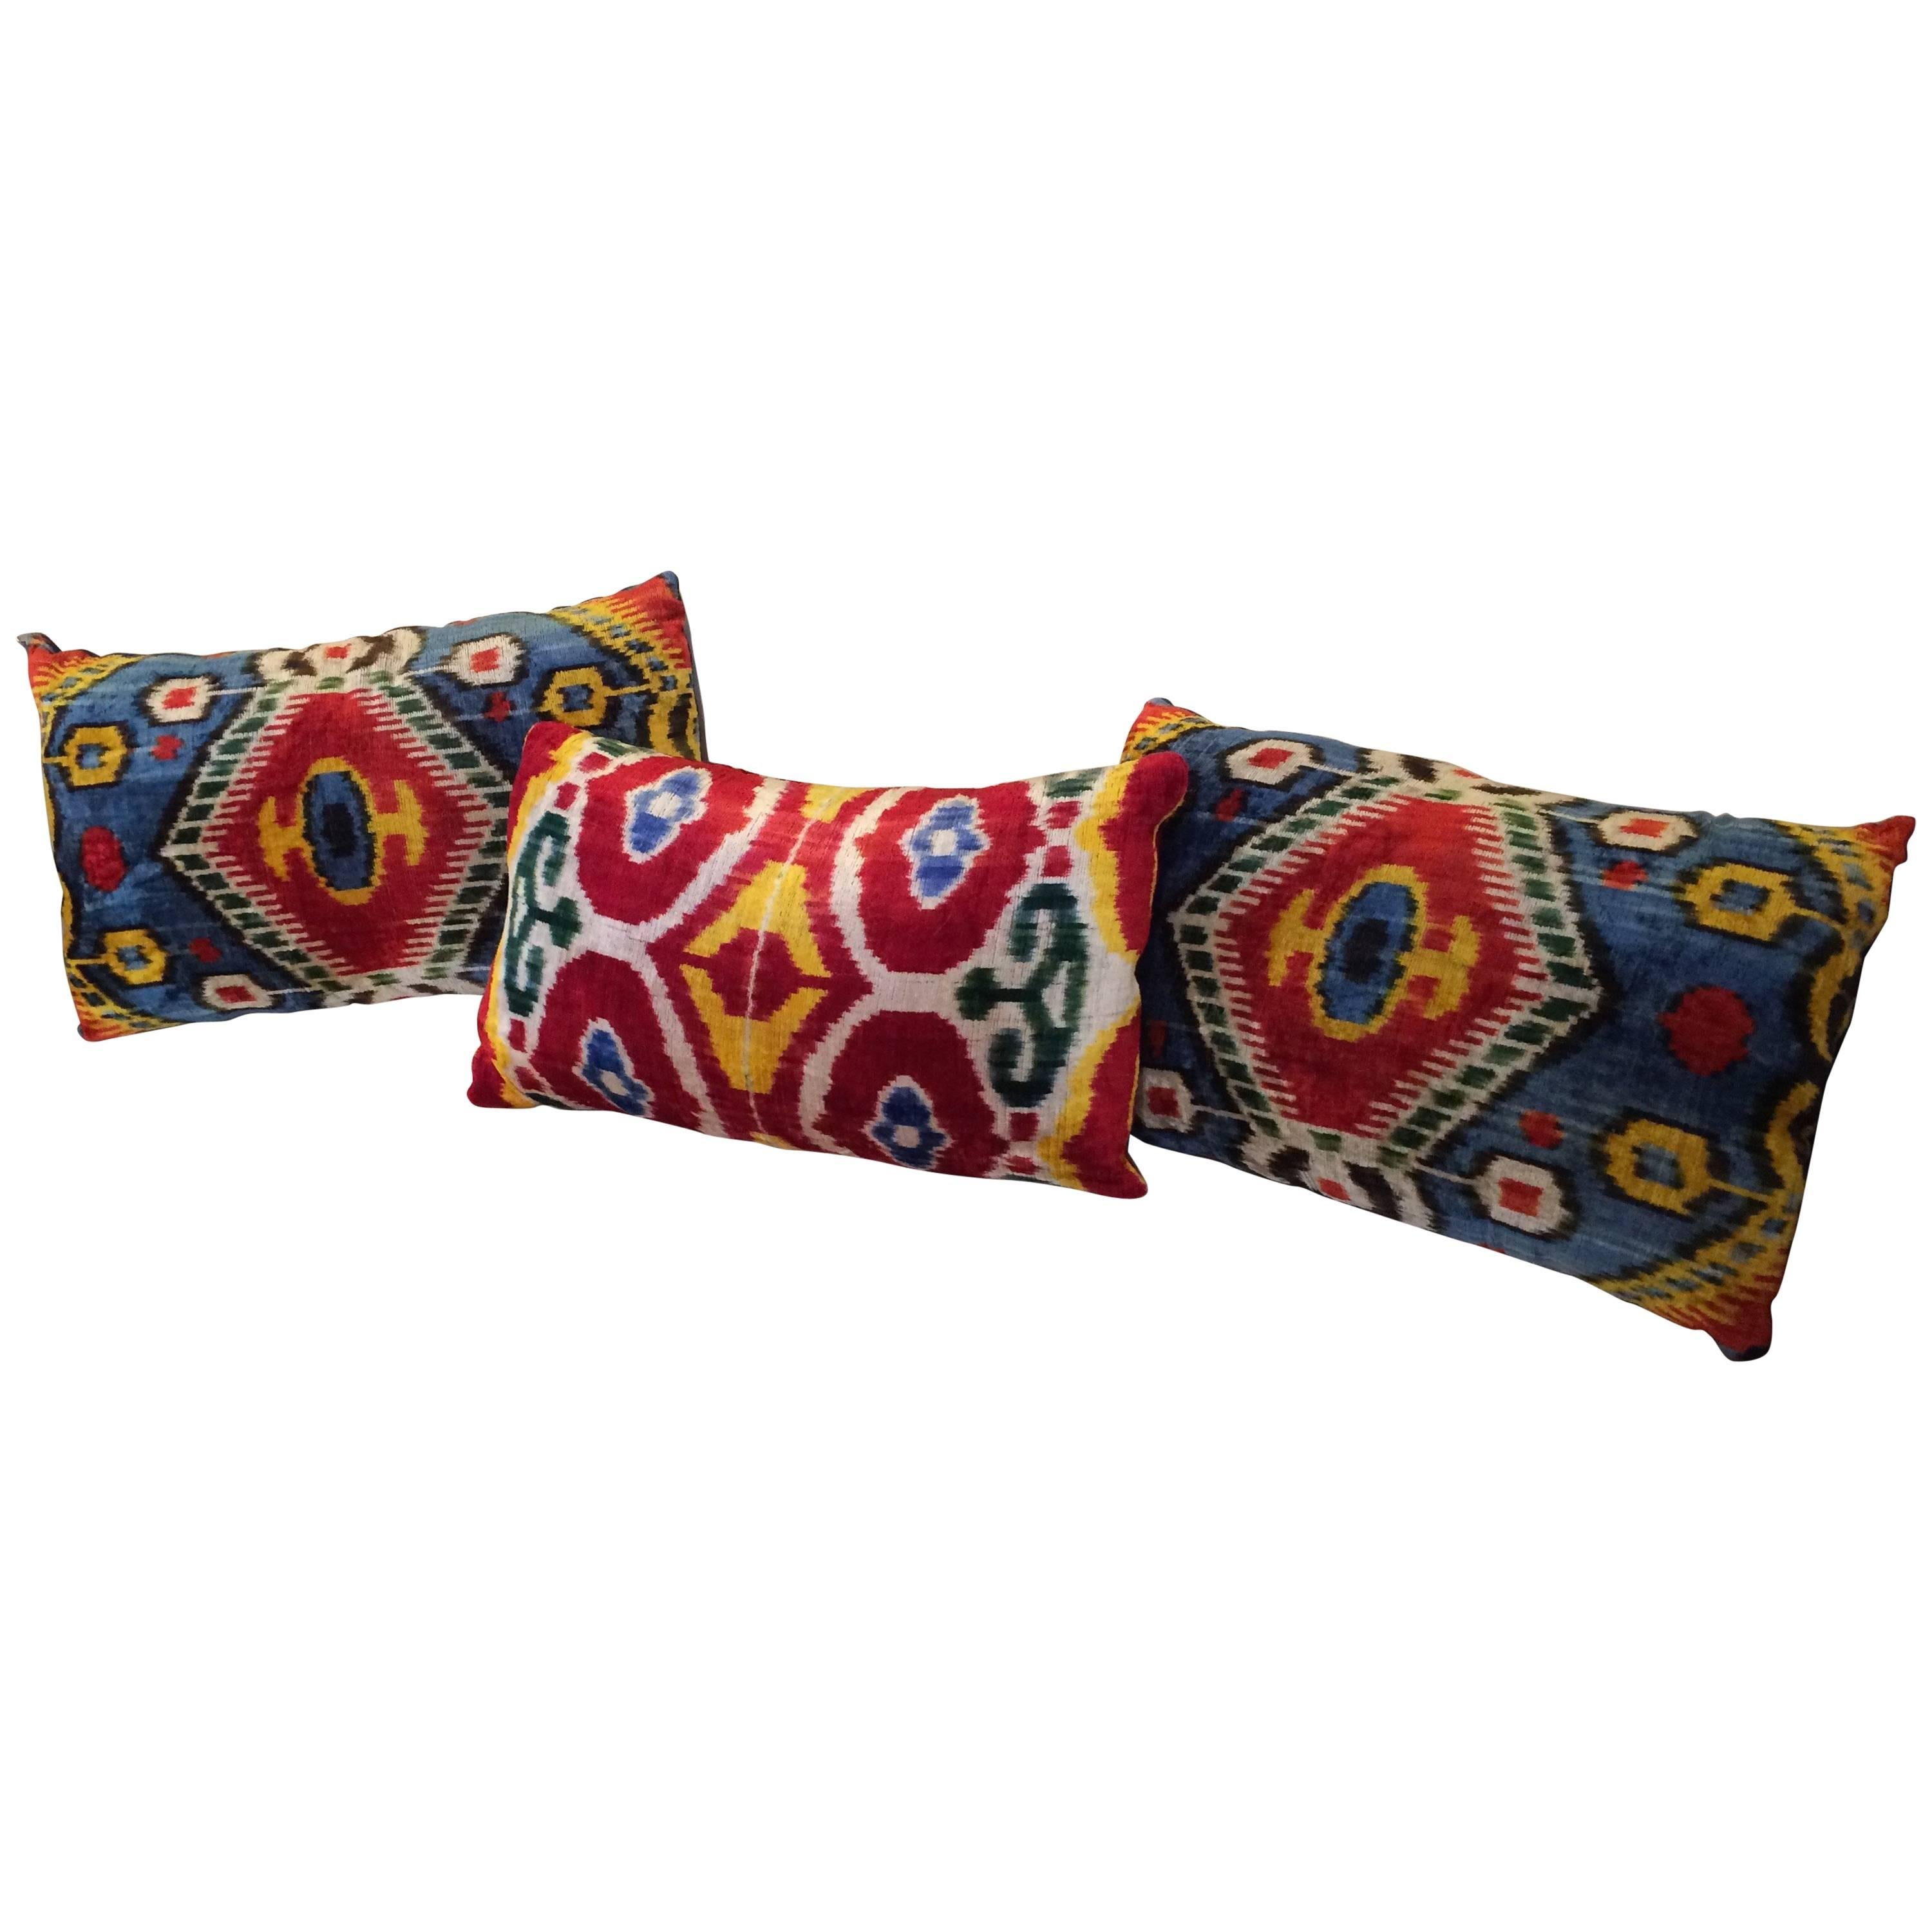 Coussins uniques en velours de soie teintés à la main en provenance d'Ouzbékistan.
Mesures : Coussins bleus 21 x 15 x 4.5
Coussins rouges 20 x 13 x 4,5.